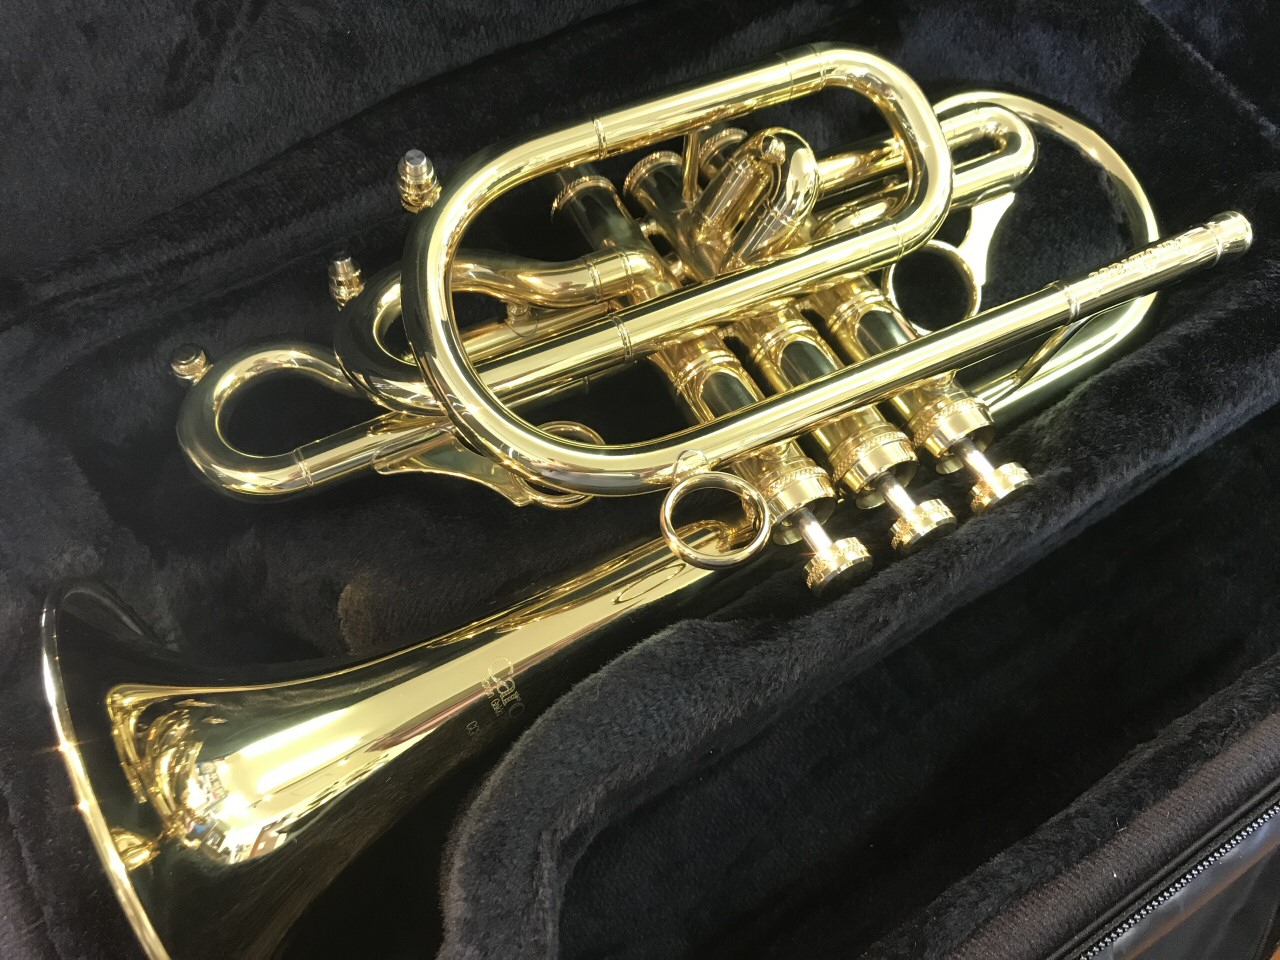 管楽器専門店 Groovin Trumpet お客様ご注文のcarol Brass キャロルブラス コルネットn7772clが入荷したので記念に 形状にかなり特徴がありますね 音色はコルネットらしい柔らかさと明るさもあり 主観ですがソロやe コルネットの代用などにお勧め